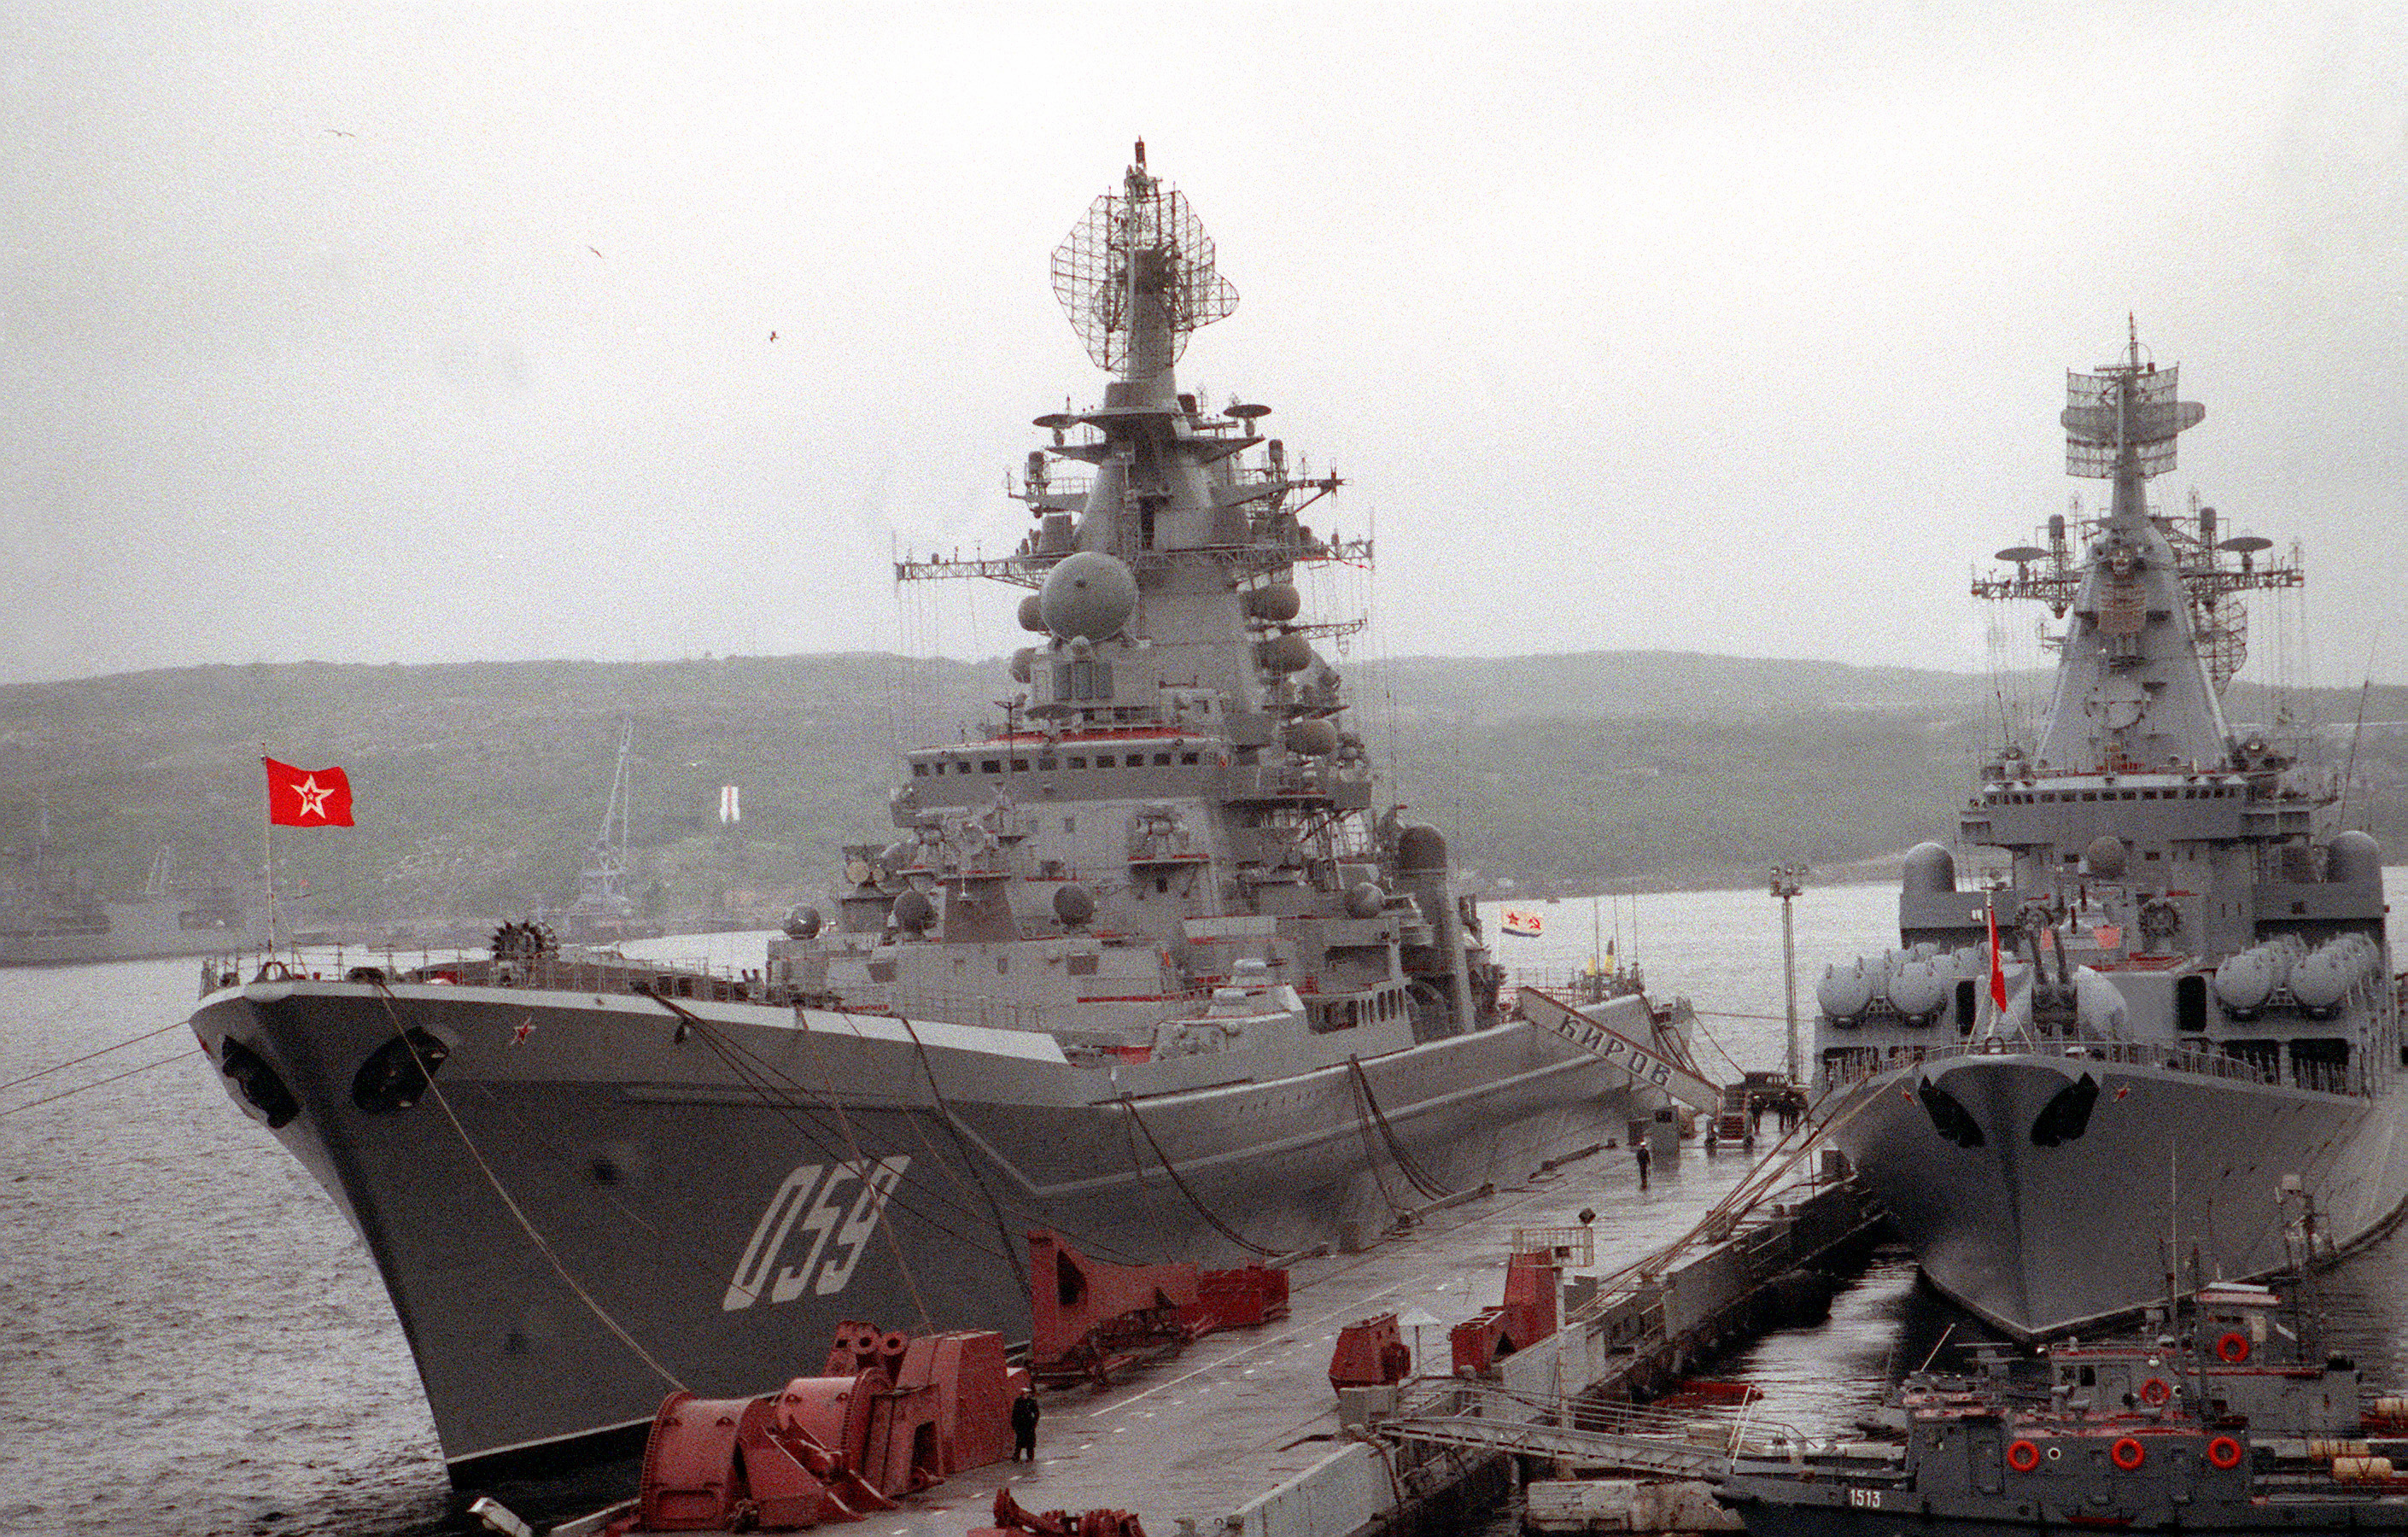 Nuclear cruiser Kirov